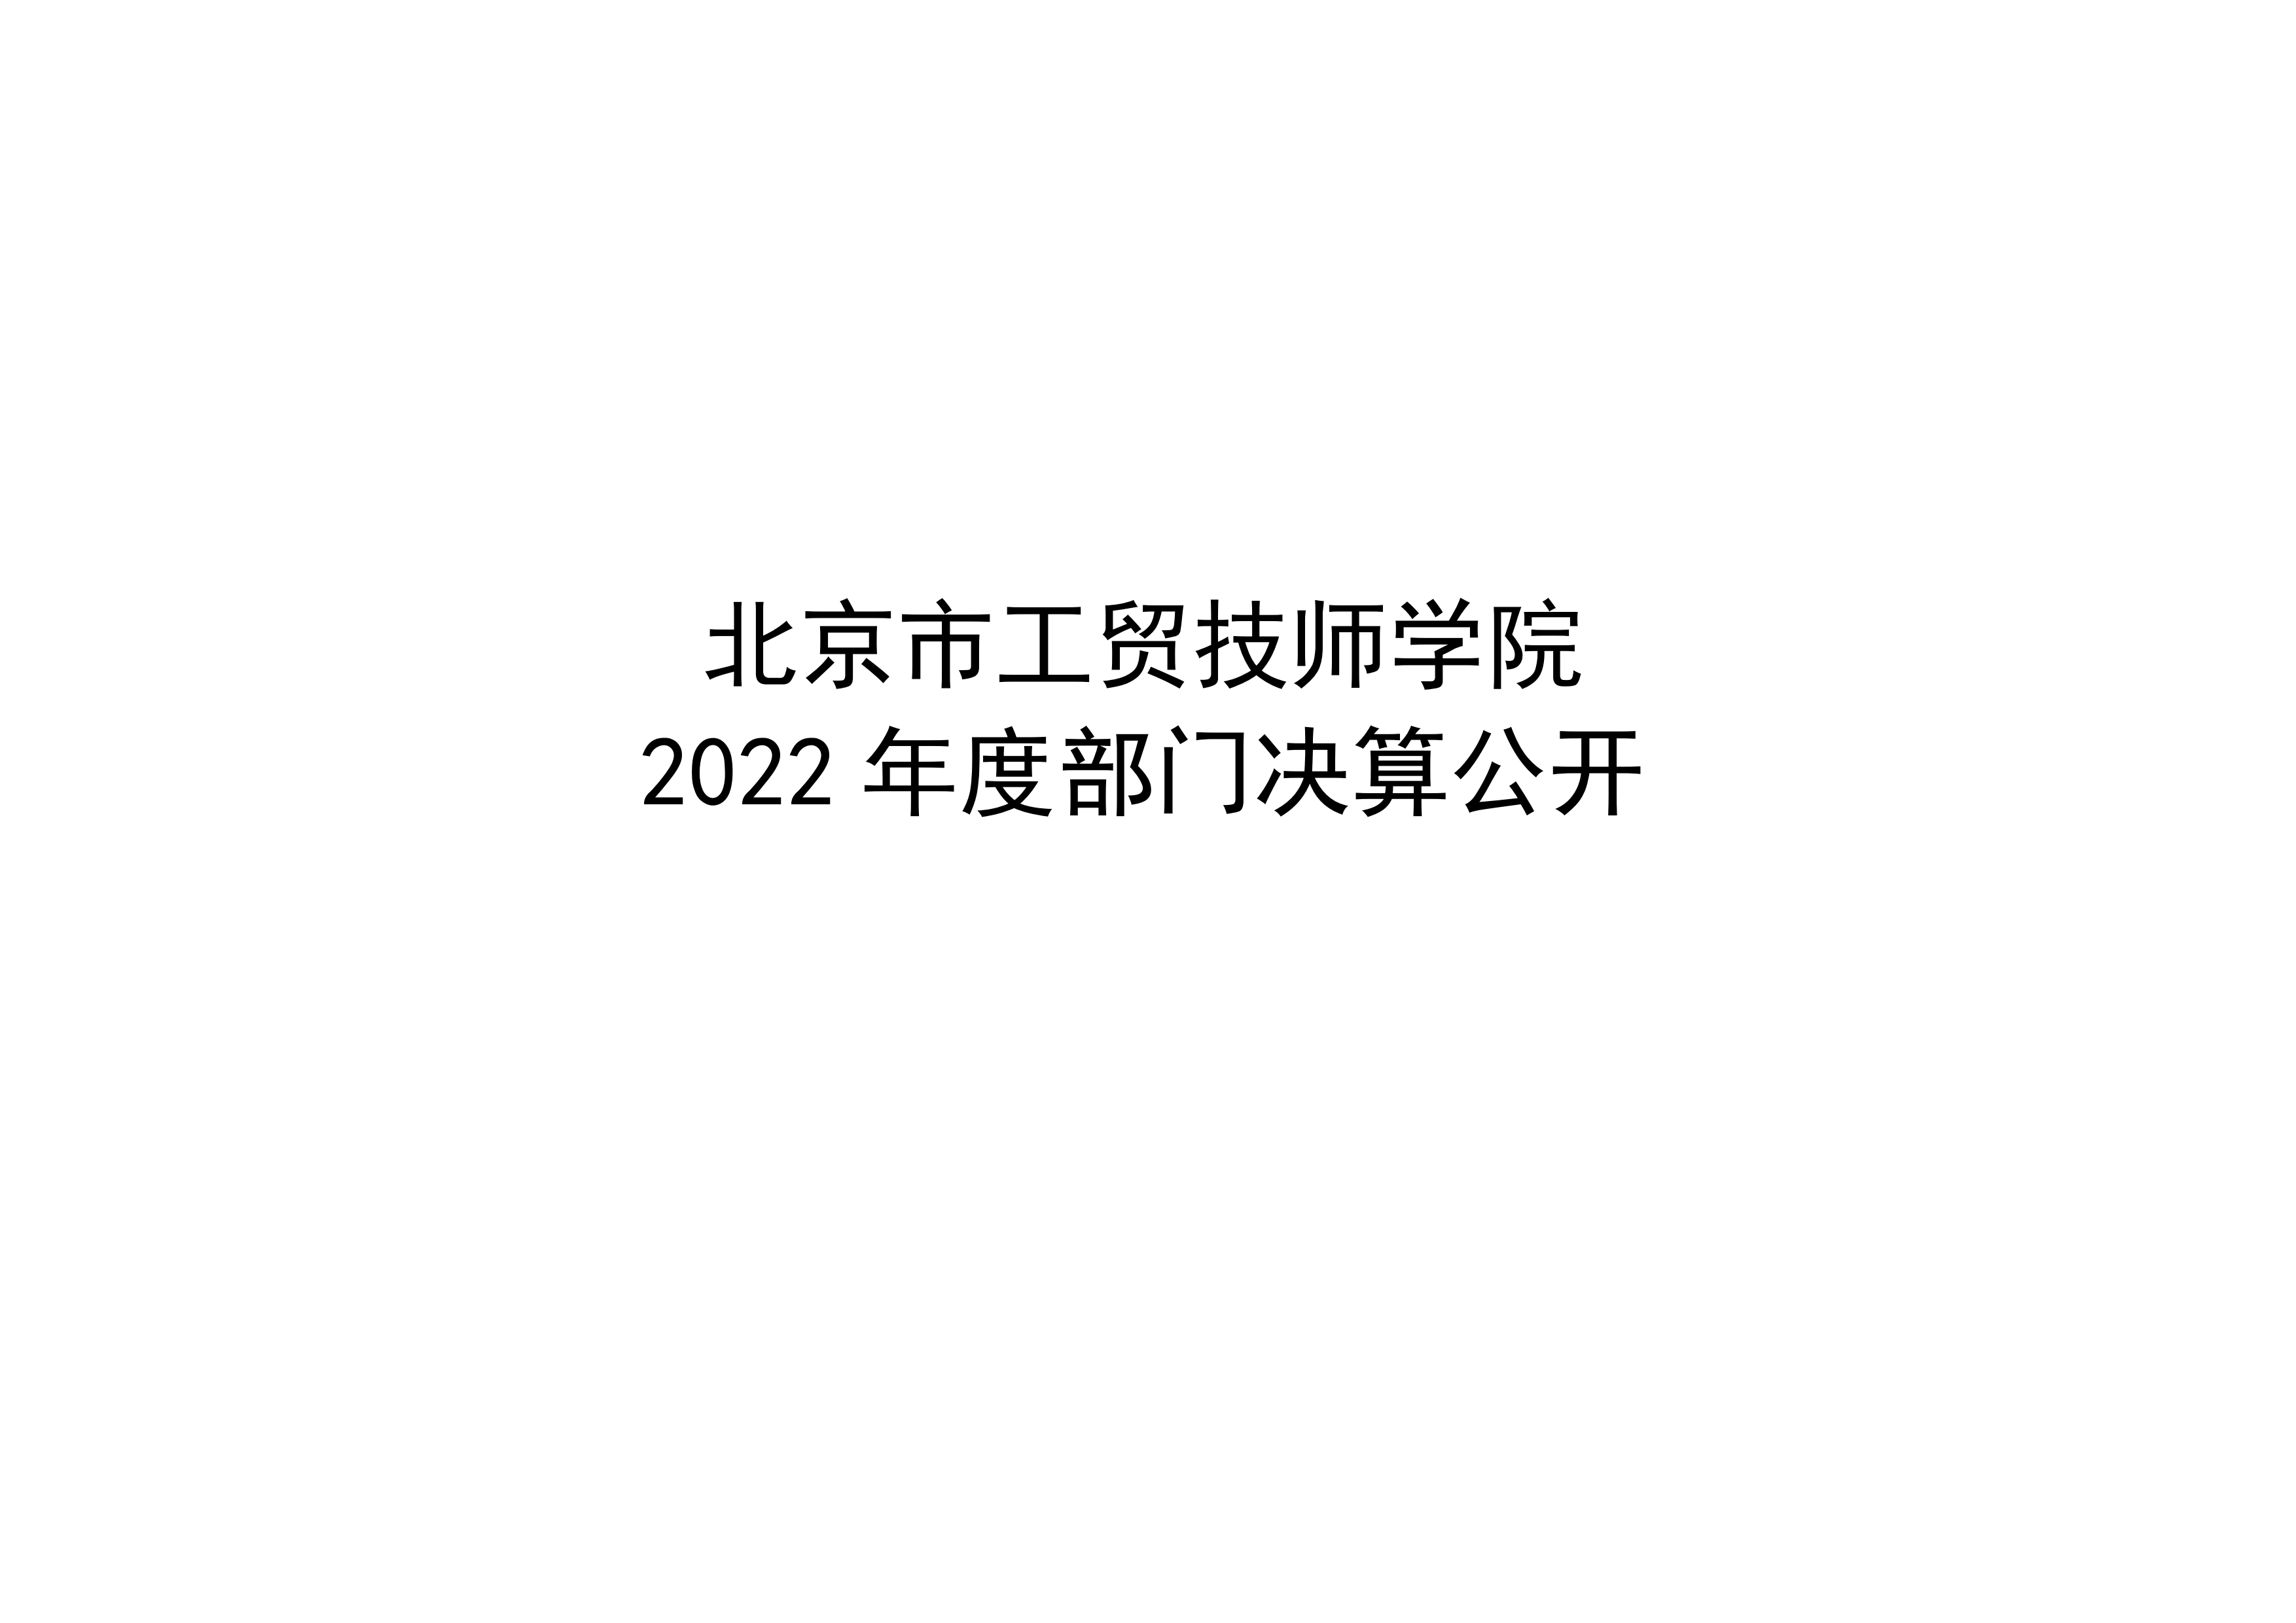 北京市工贸技师学院2022年度部门决算公开_00.png